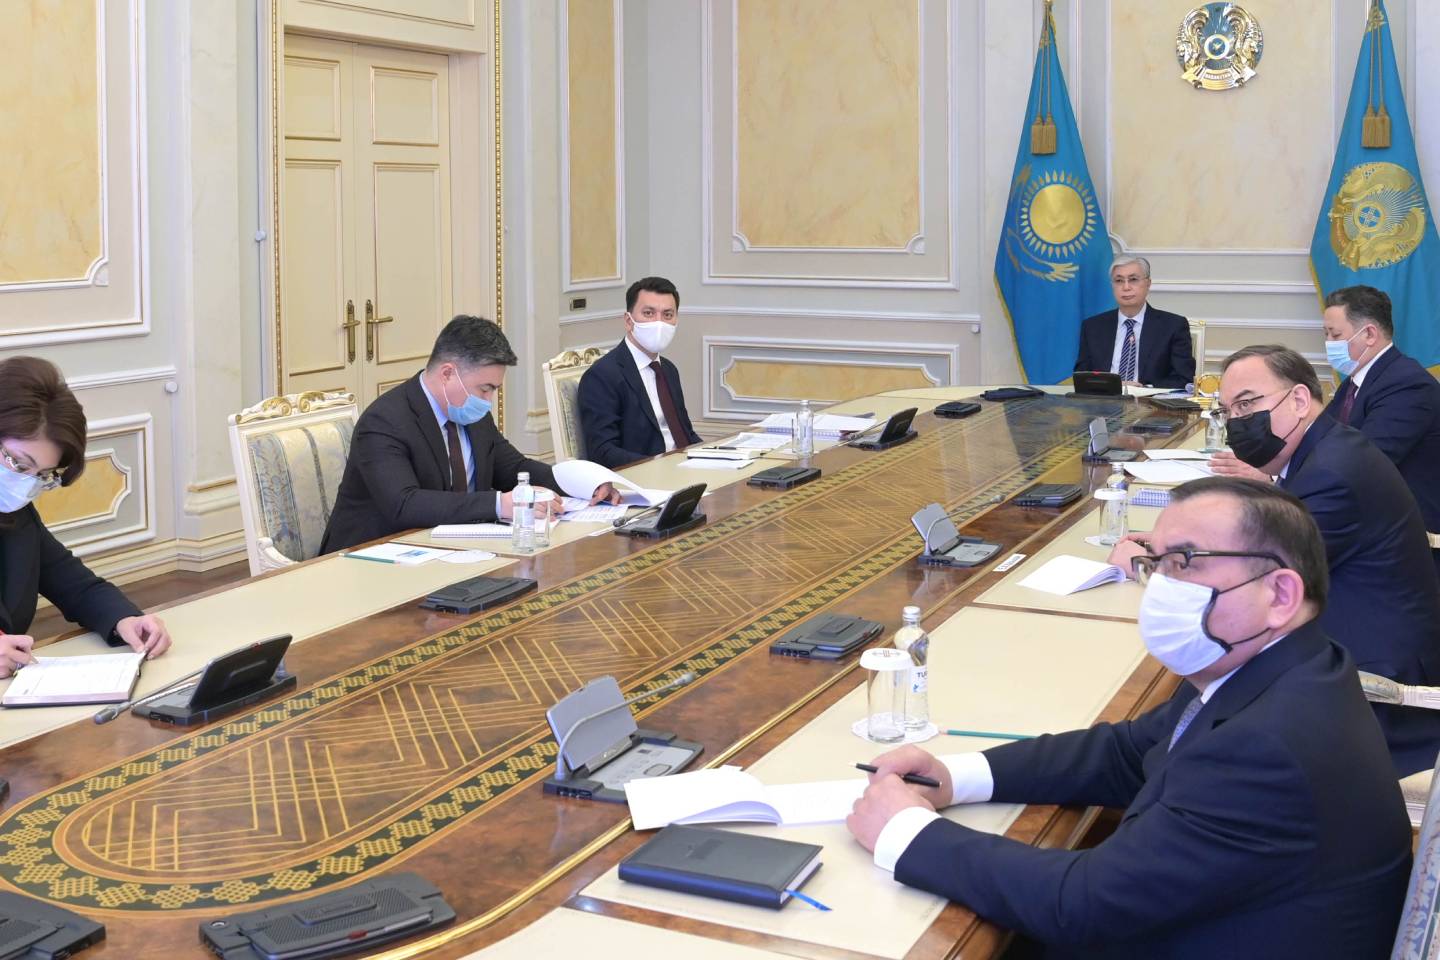 Новости Казахстана / Общество в Казахстане / Глава Казахстана высказался о строительстве АЭС на территории страны